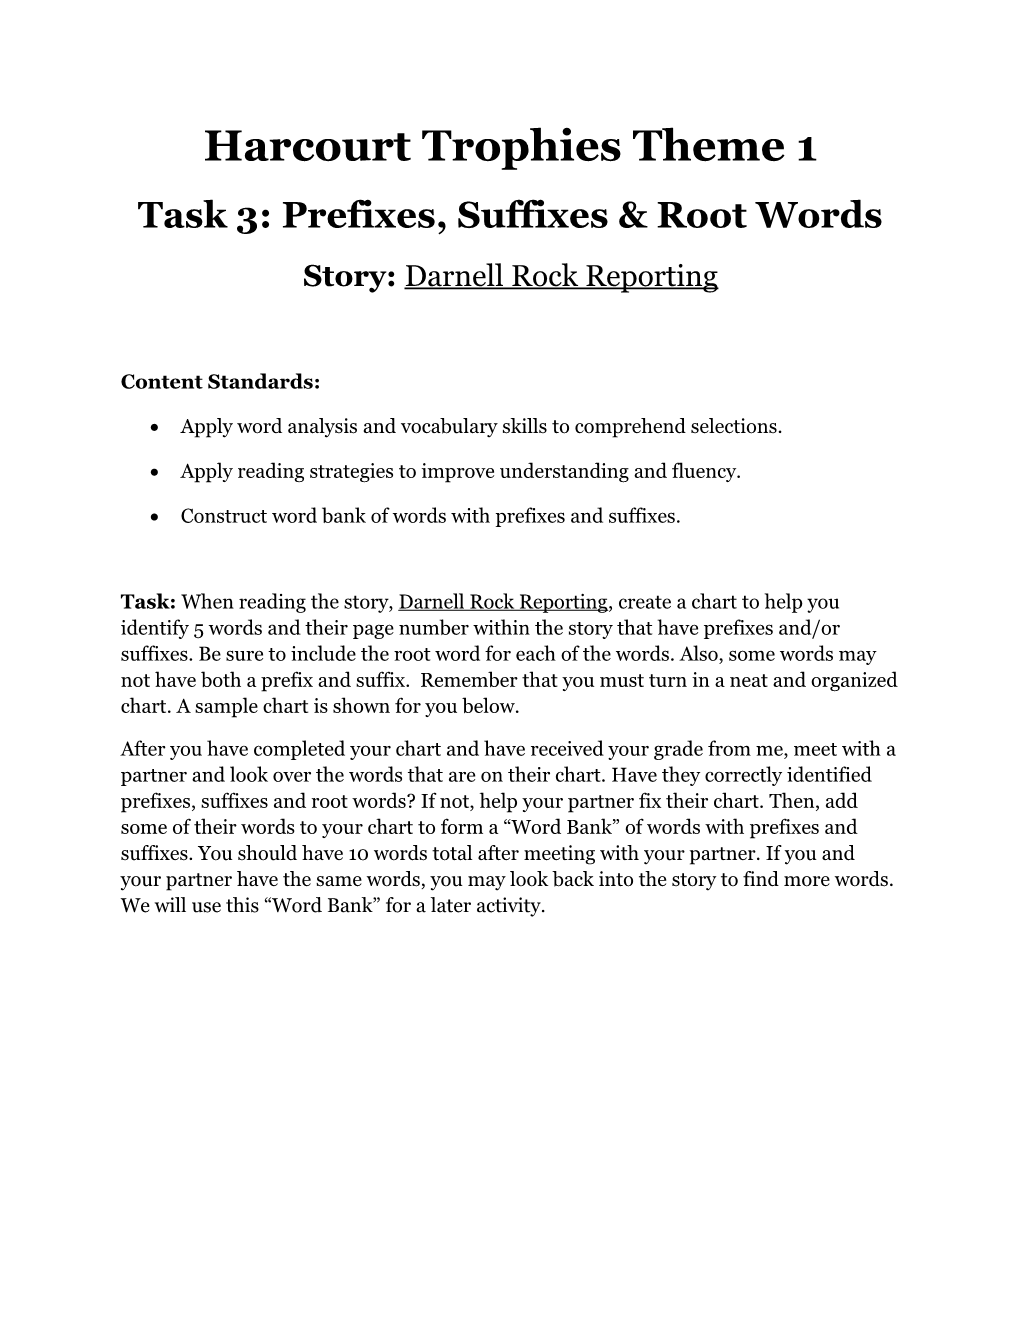 Task 3: Prefixes, Suffixes & Root Words